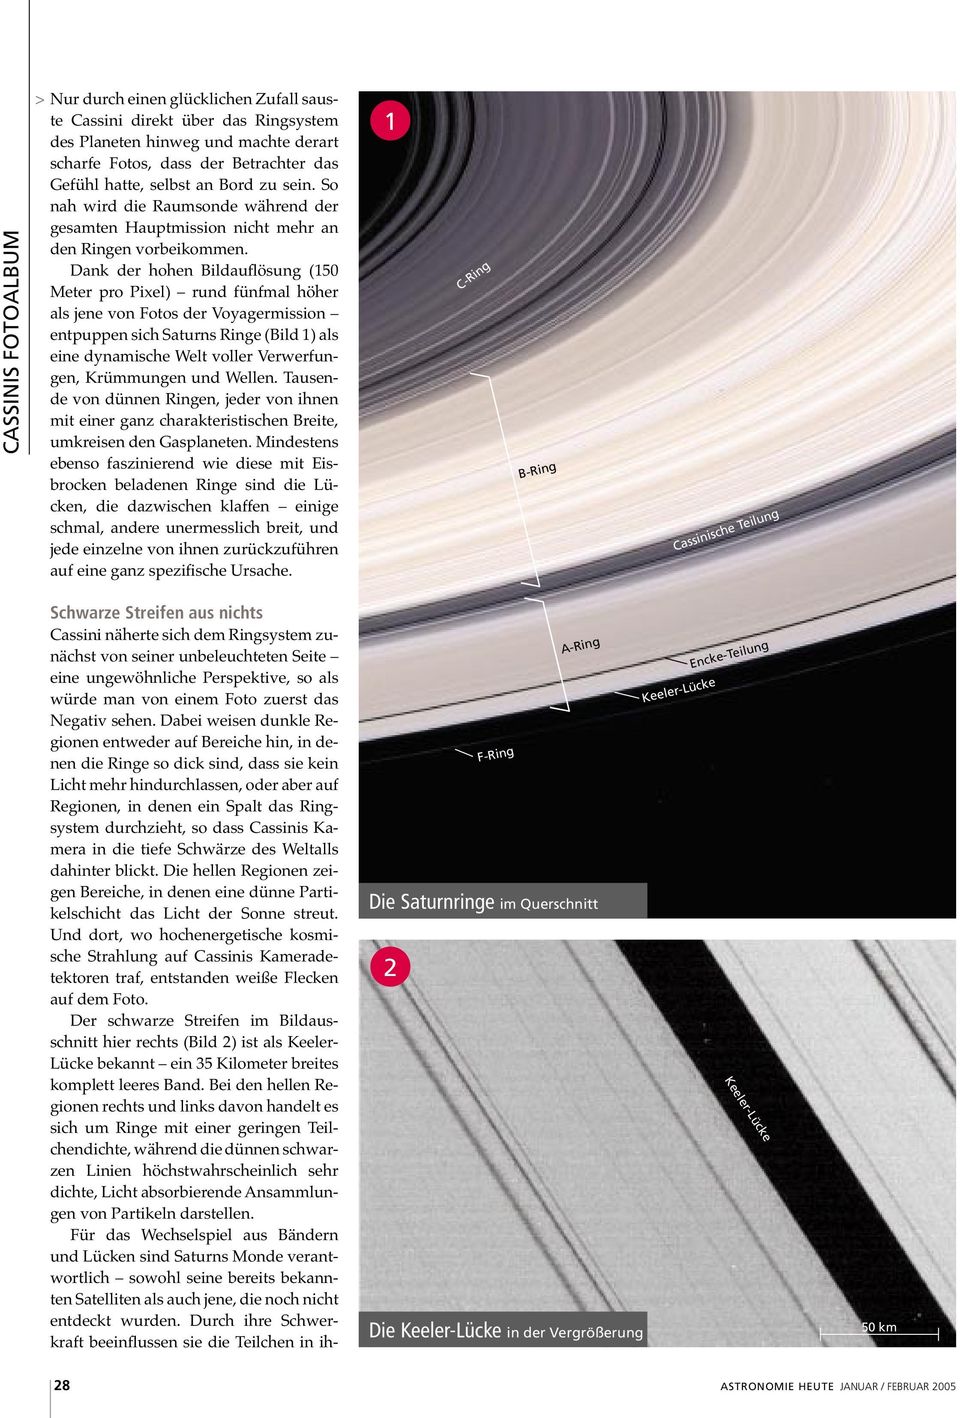 Dank der hohen Bildauflösung (150 Meter pro Pixel) rund fünfmal höher als jene von Fotos der Voyagermission entpuppen sich Saturns Ringe (Bild 1) als eine dynamische Welt voller Verwerfungen,